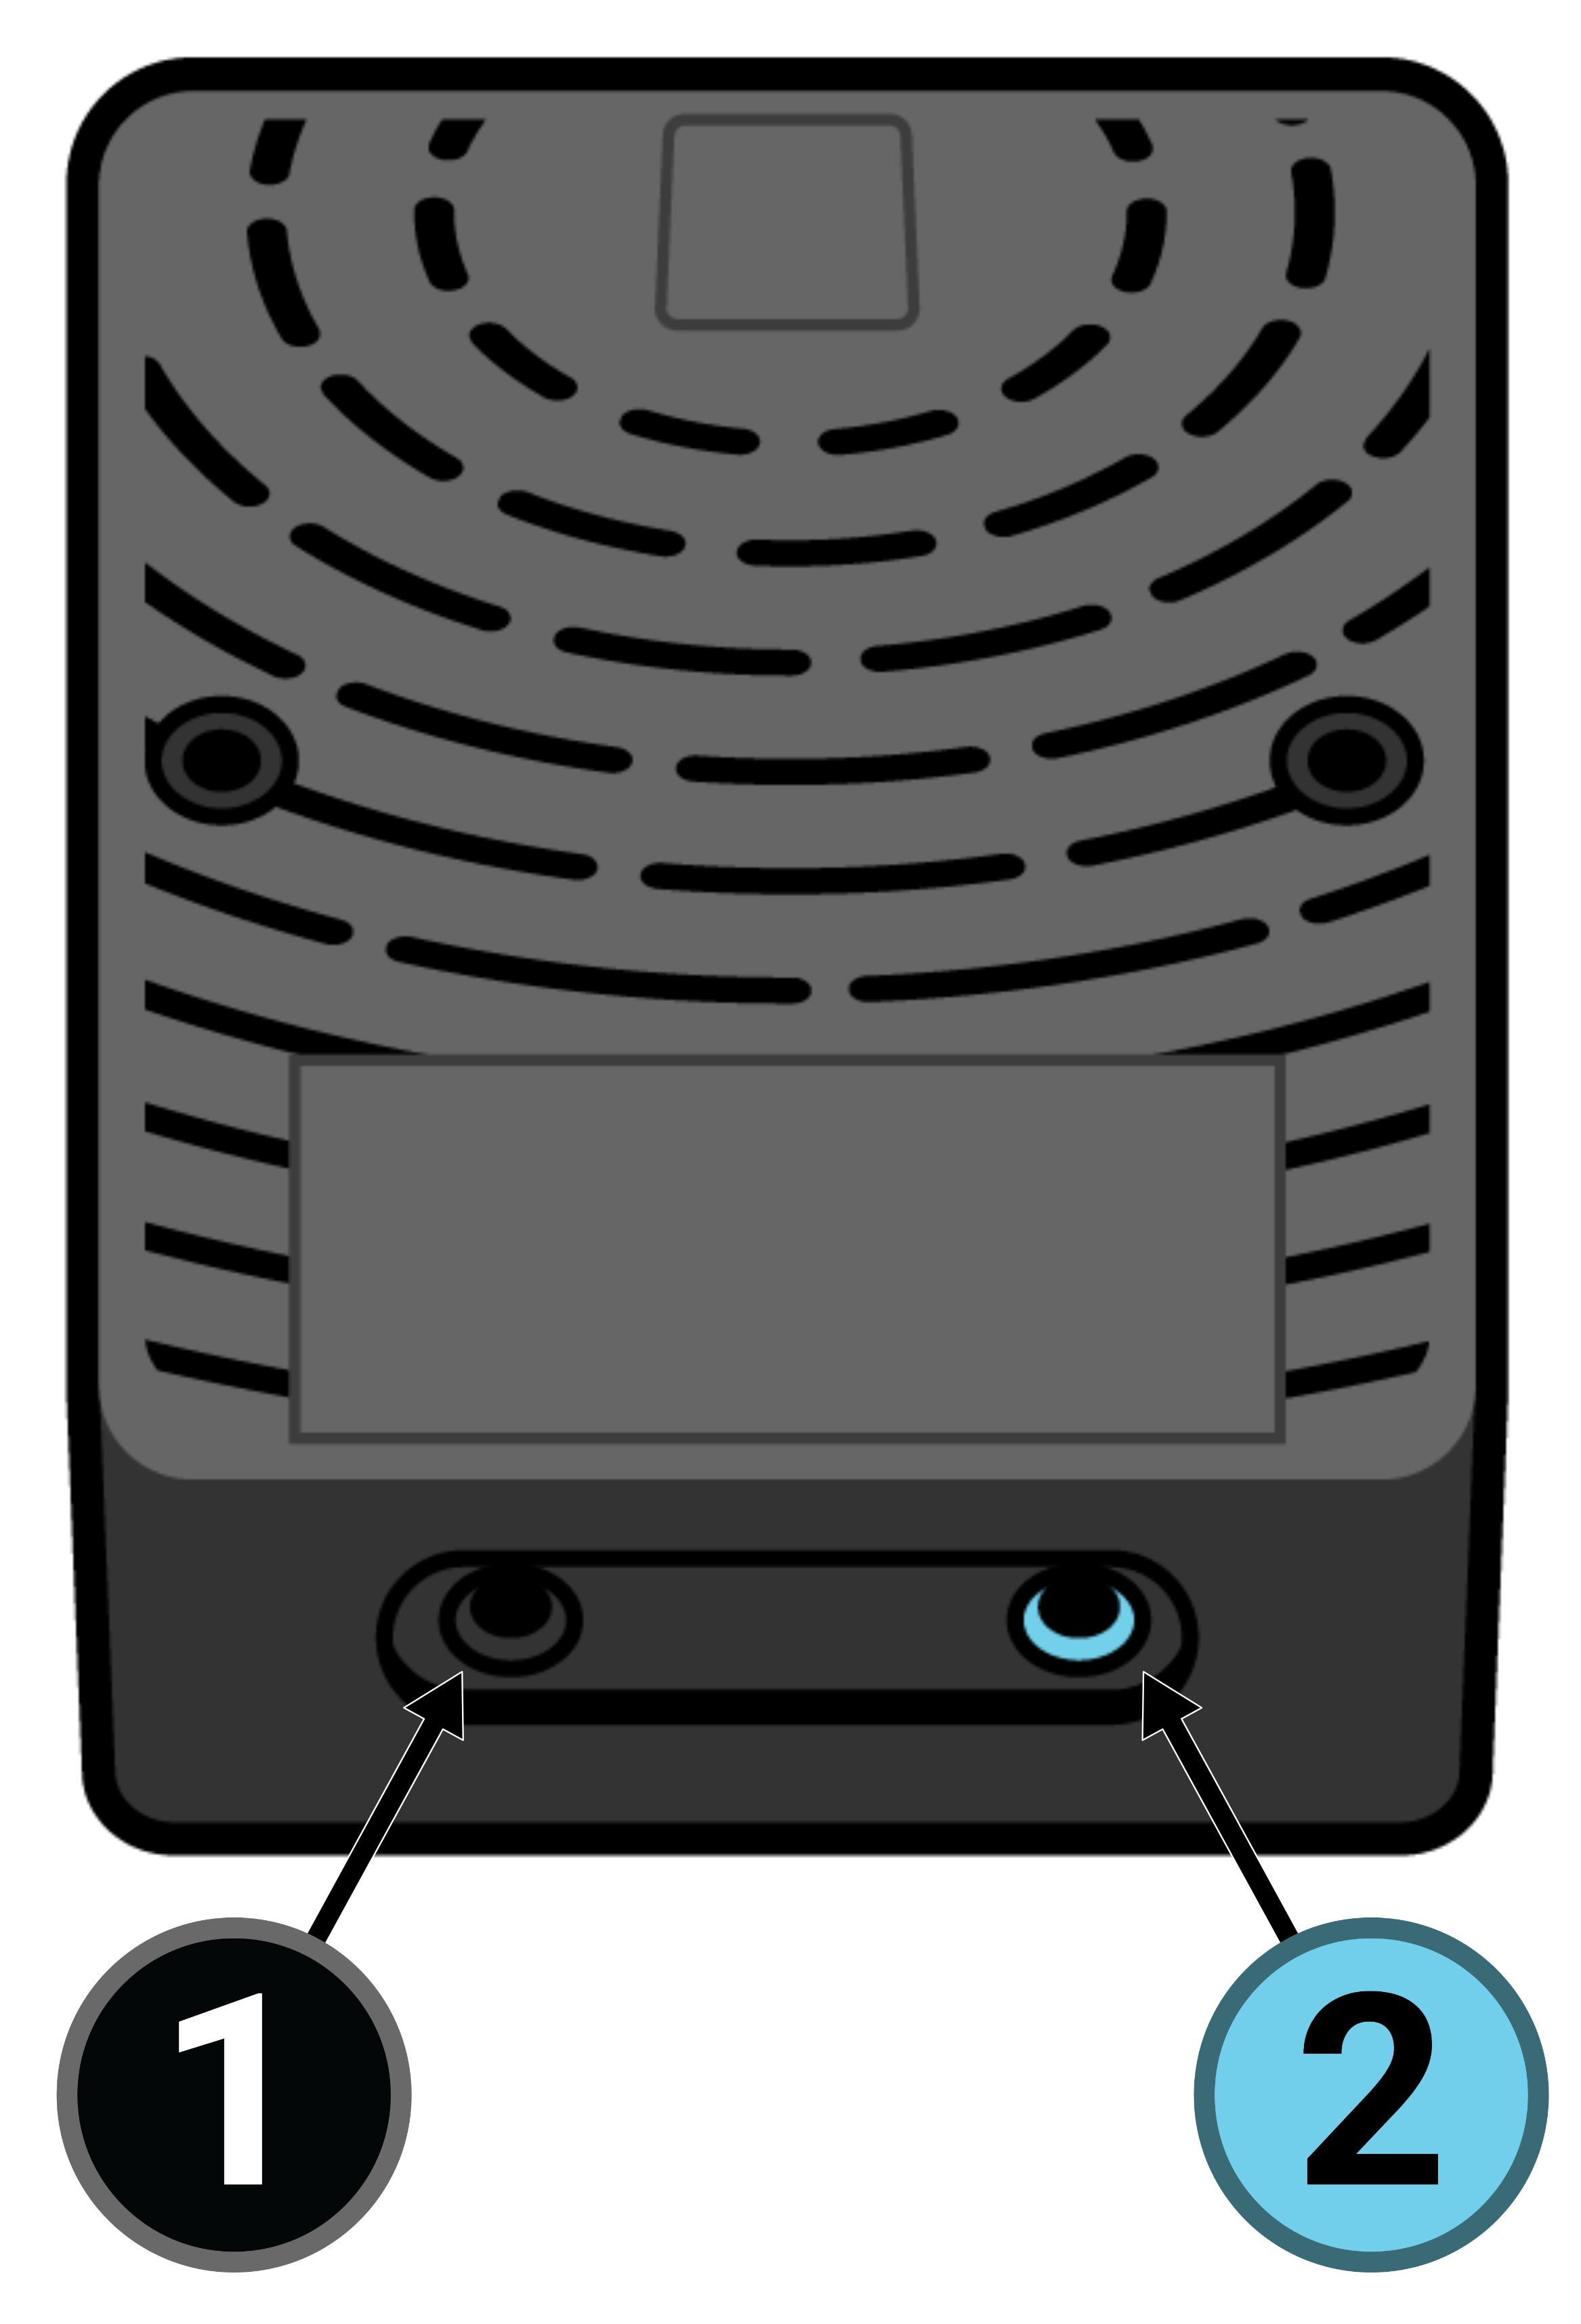 Eine Draufsicht auf einen schwarzen Sleeptracker-AI-Prozessor, dessen USB-Kabel nach oben zeigt und dessen runde Lüftungsschlitze dem Betrachter zugewandt sind. Links befindet sich ein kleiner schwarzer runder Anschluss mit der Aufschrift